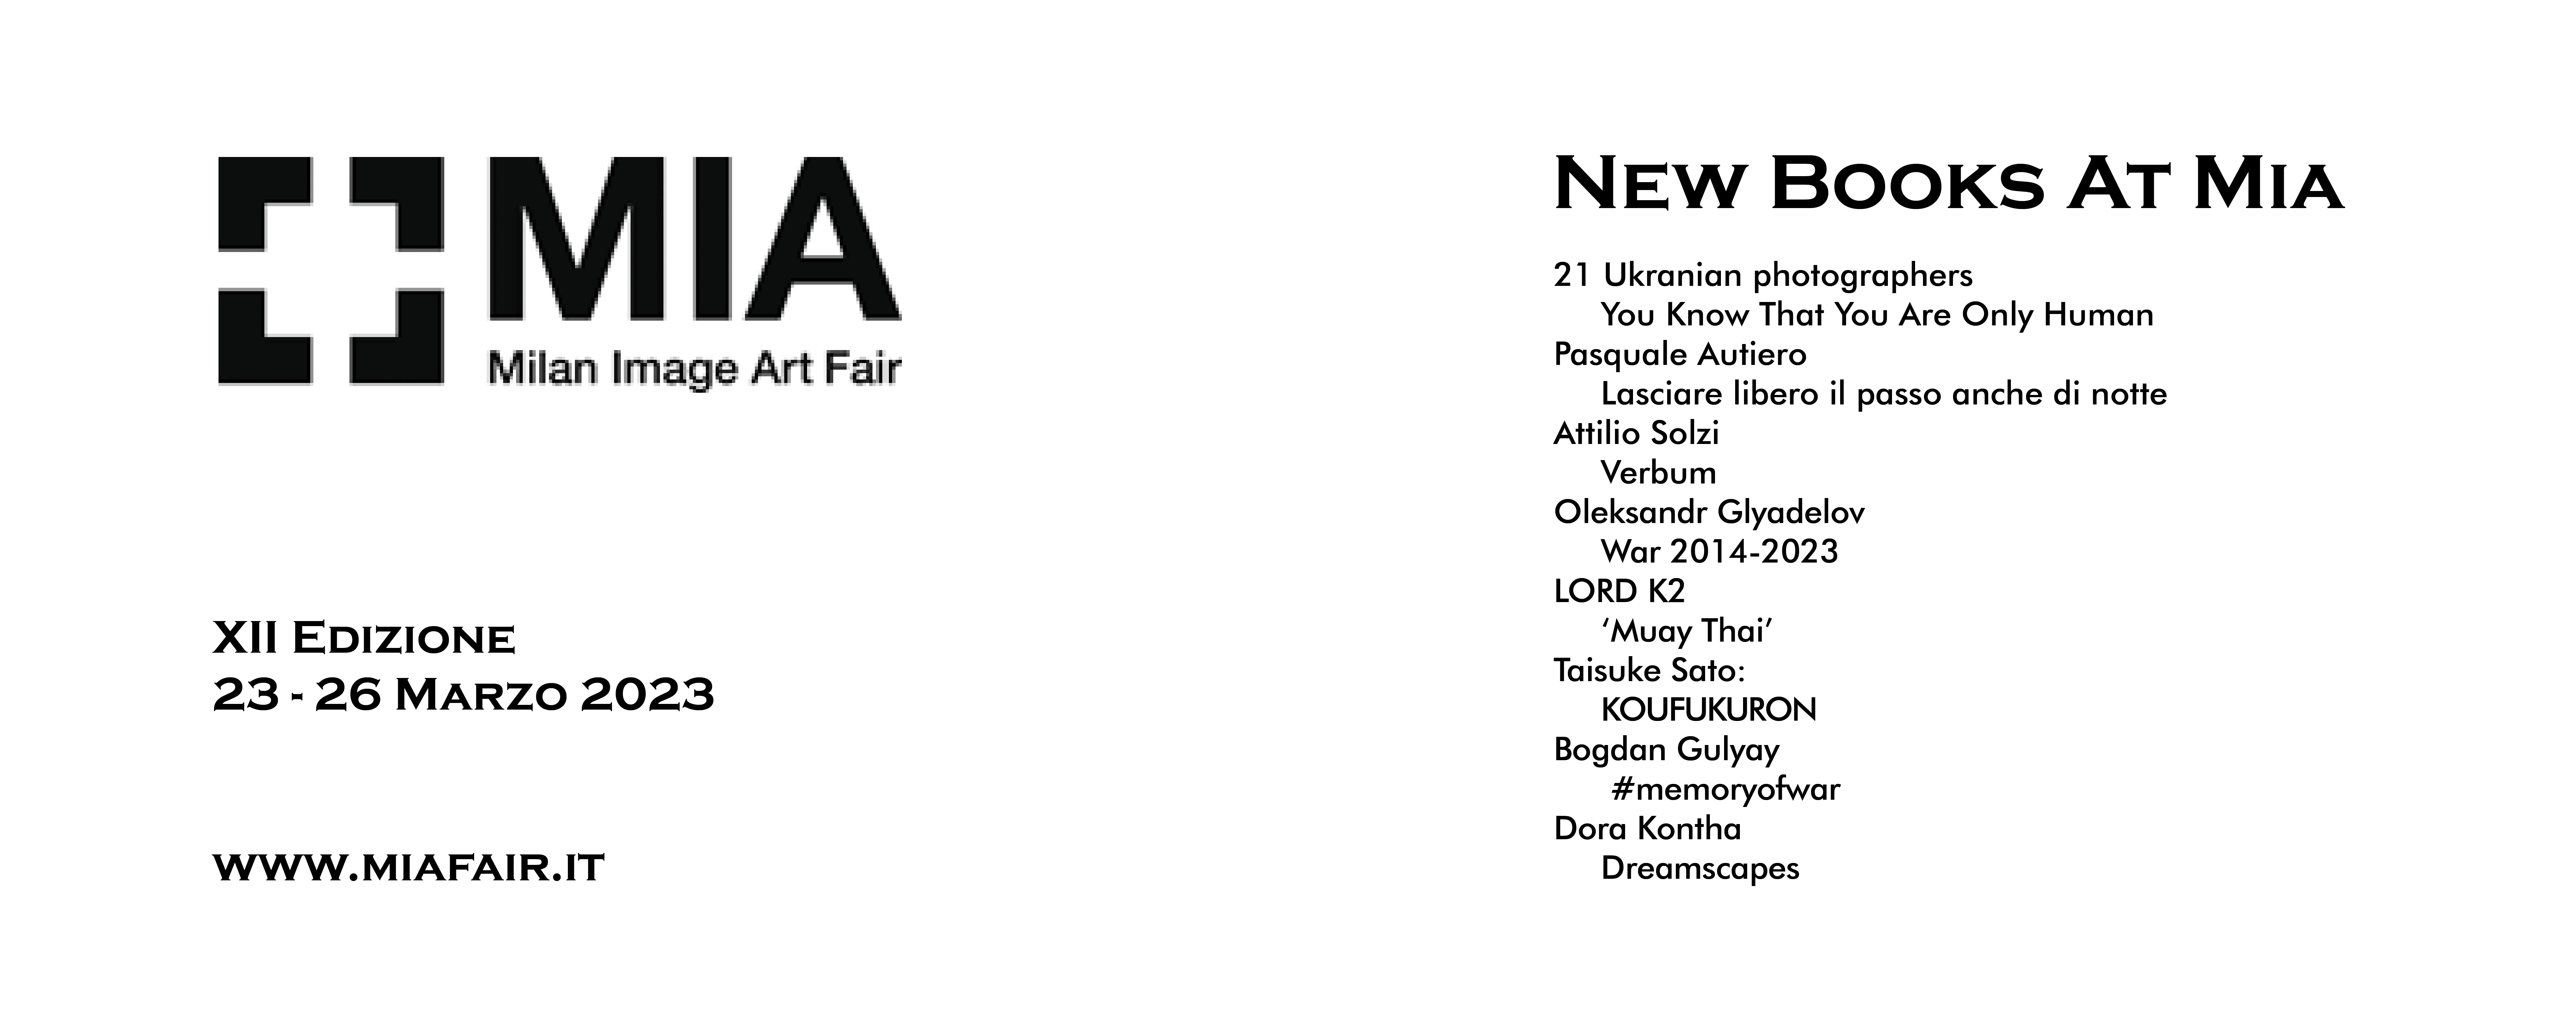 89books goest to MIA Fair 2023!